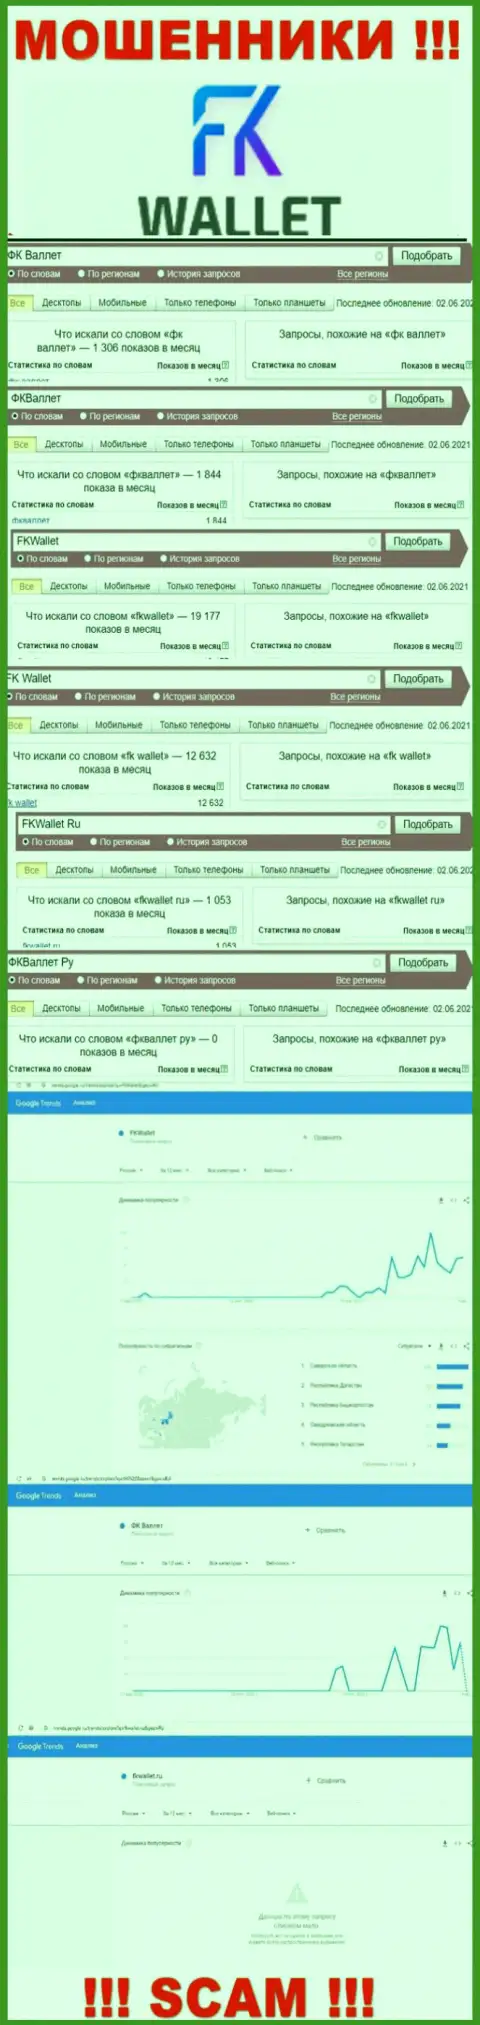 Скриншот итога поисковых запросов по противозаконно действующей конторе FKWallet